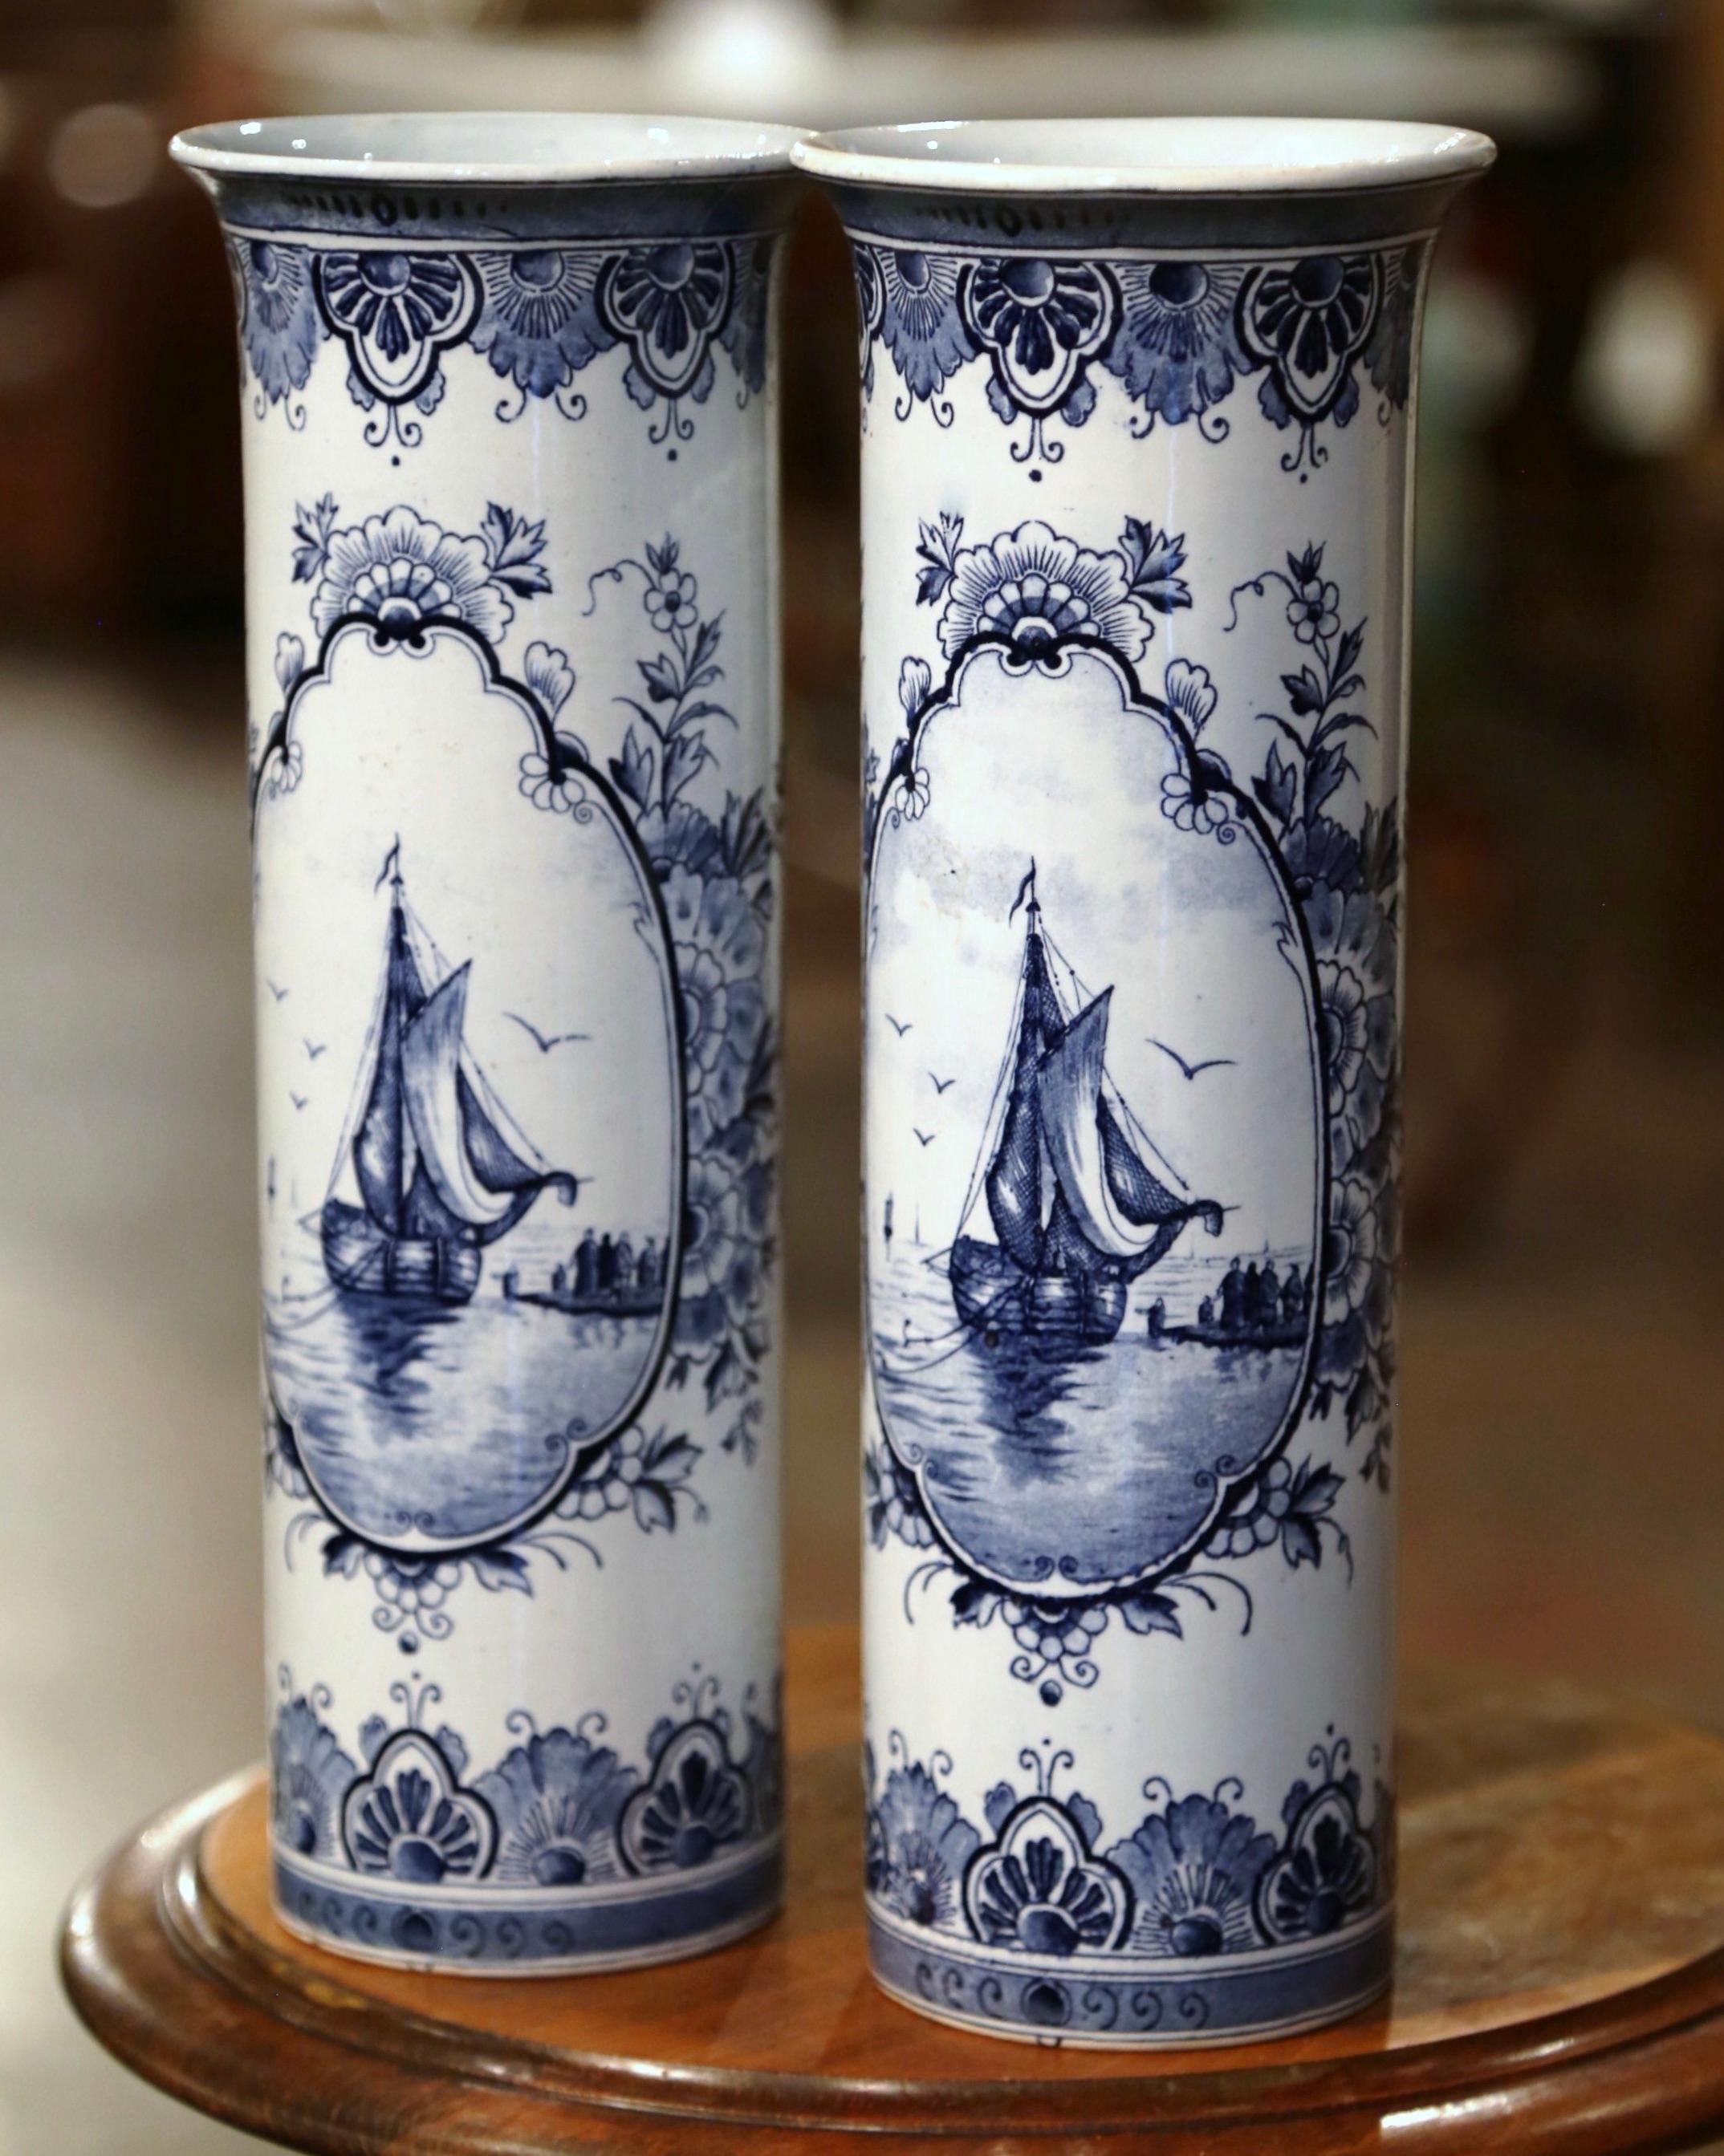 Dekorieren Sie ein Regal oder einen Konsolentisch mit diesem eleganten Paar antiker Vasen mit Segelbootmotiven. Die um 1890 in Holland hergestellten runden Vasen haben eine muschelförmige Gestalt mit einem breiten Rand an der Oberseite. Jedes Gefäß